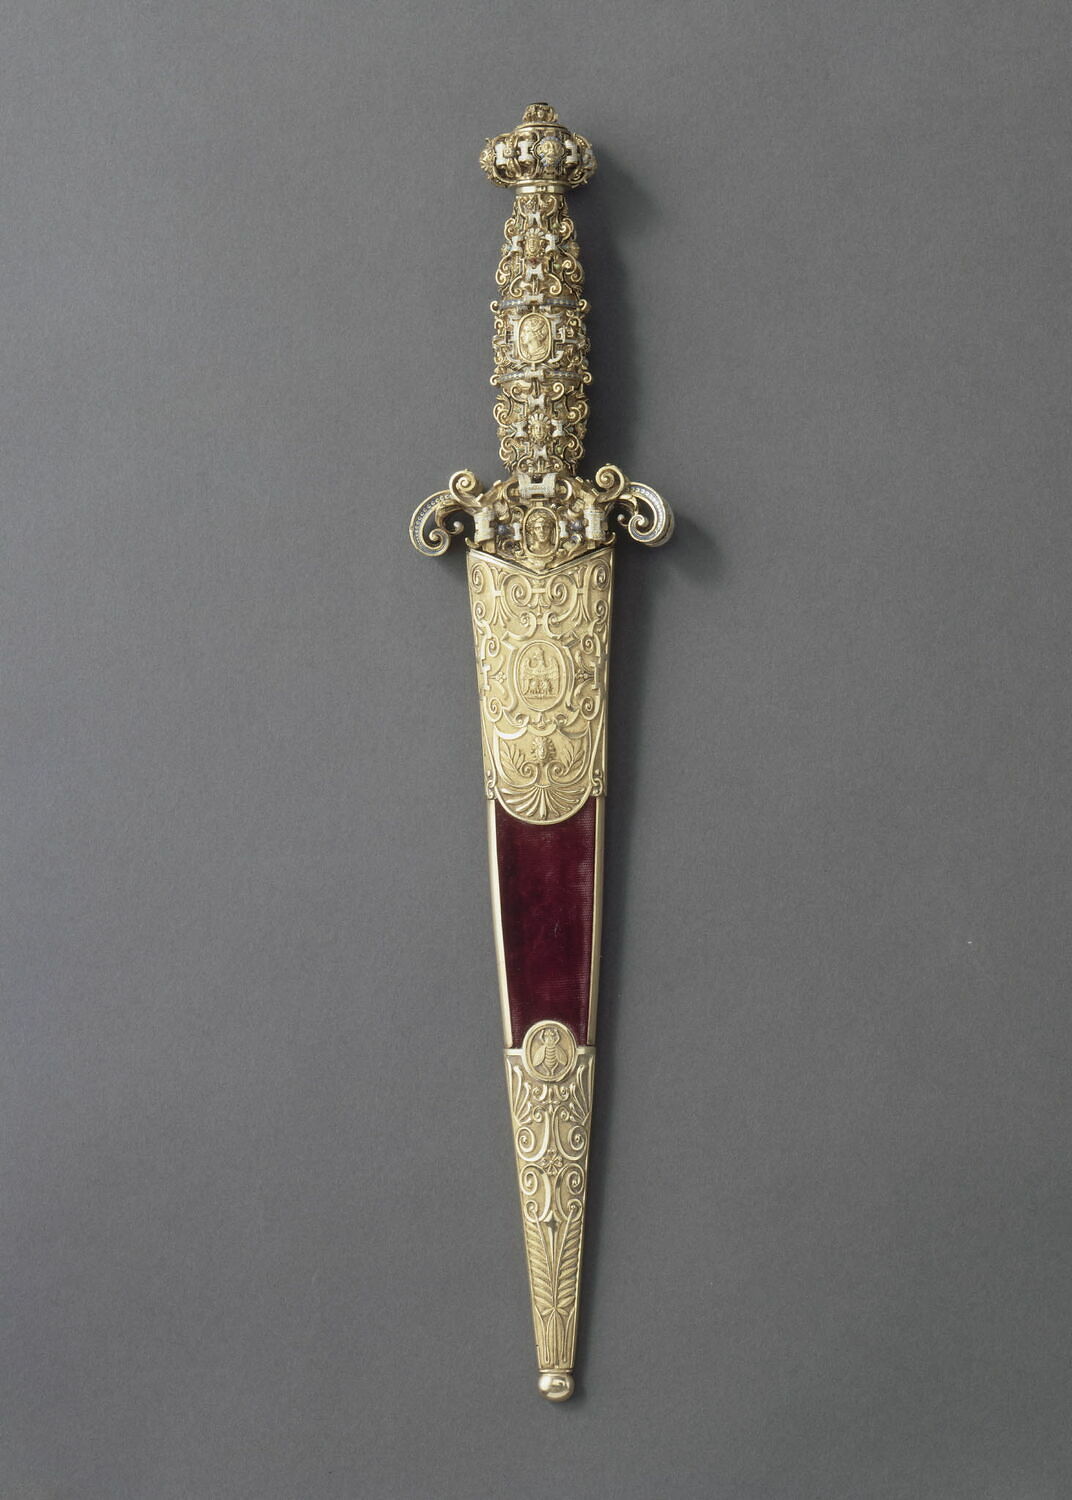 Grand__Master_of_Malta's_dagger_ (Louvre).JPG